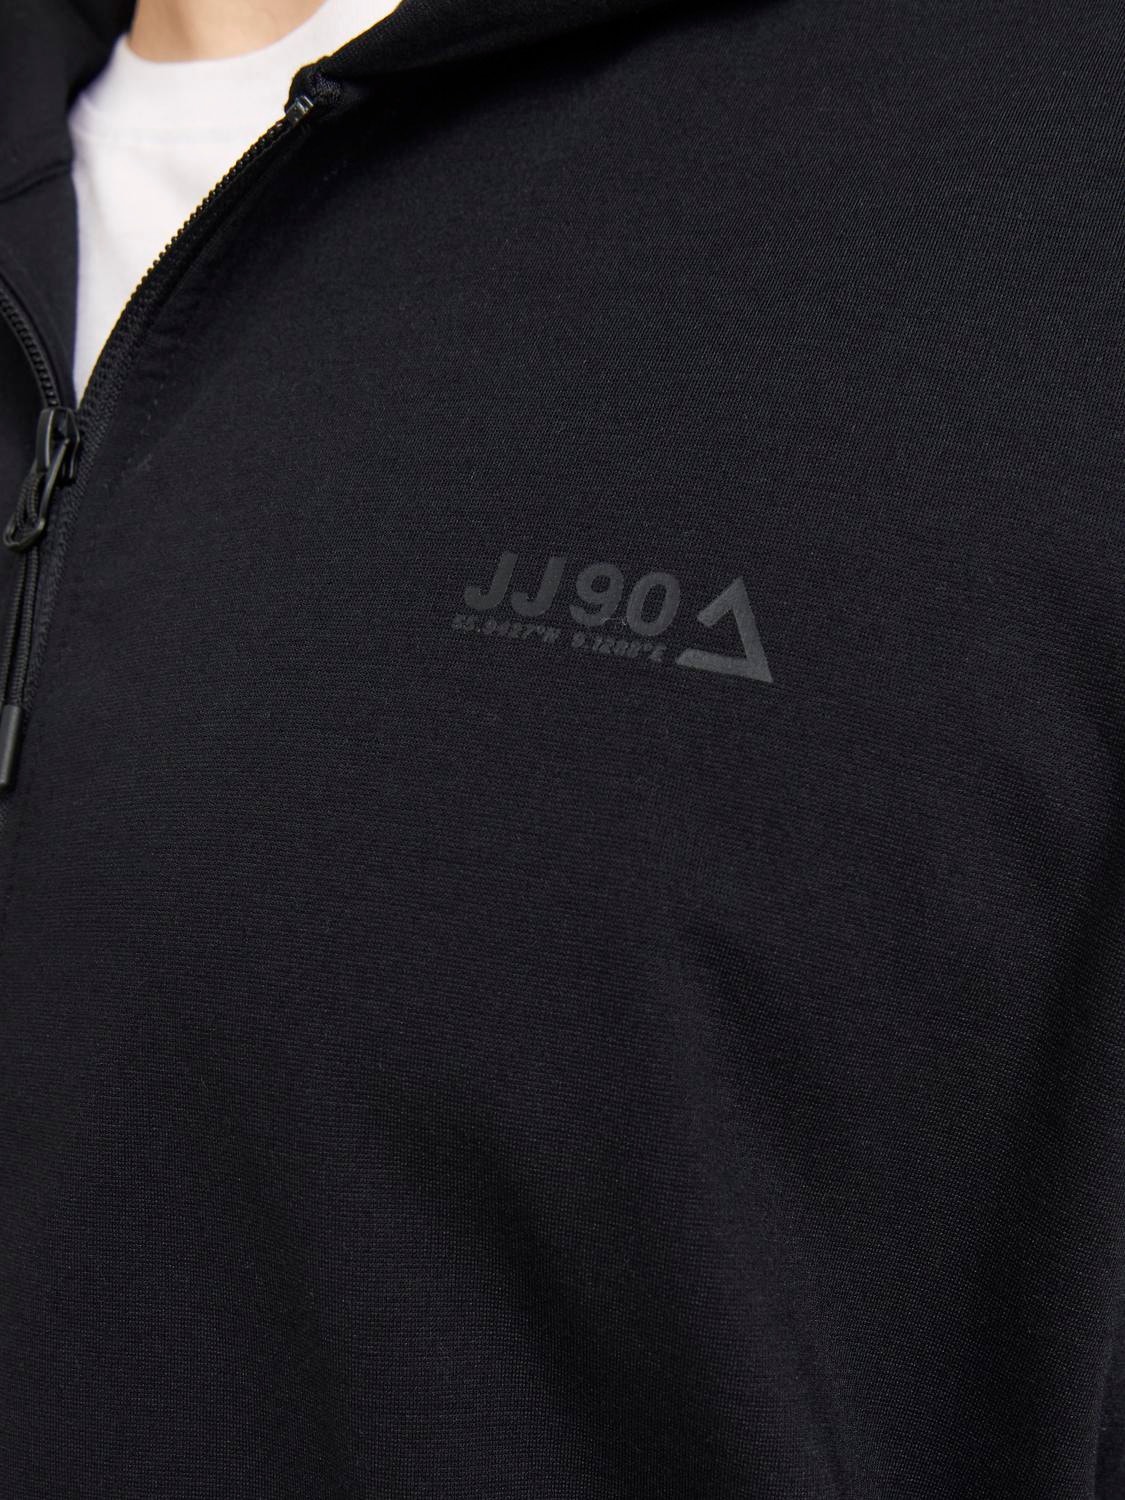 Jack & Jones Plus Size Gładki Bluza zapinana na zamek -Black - 12257551